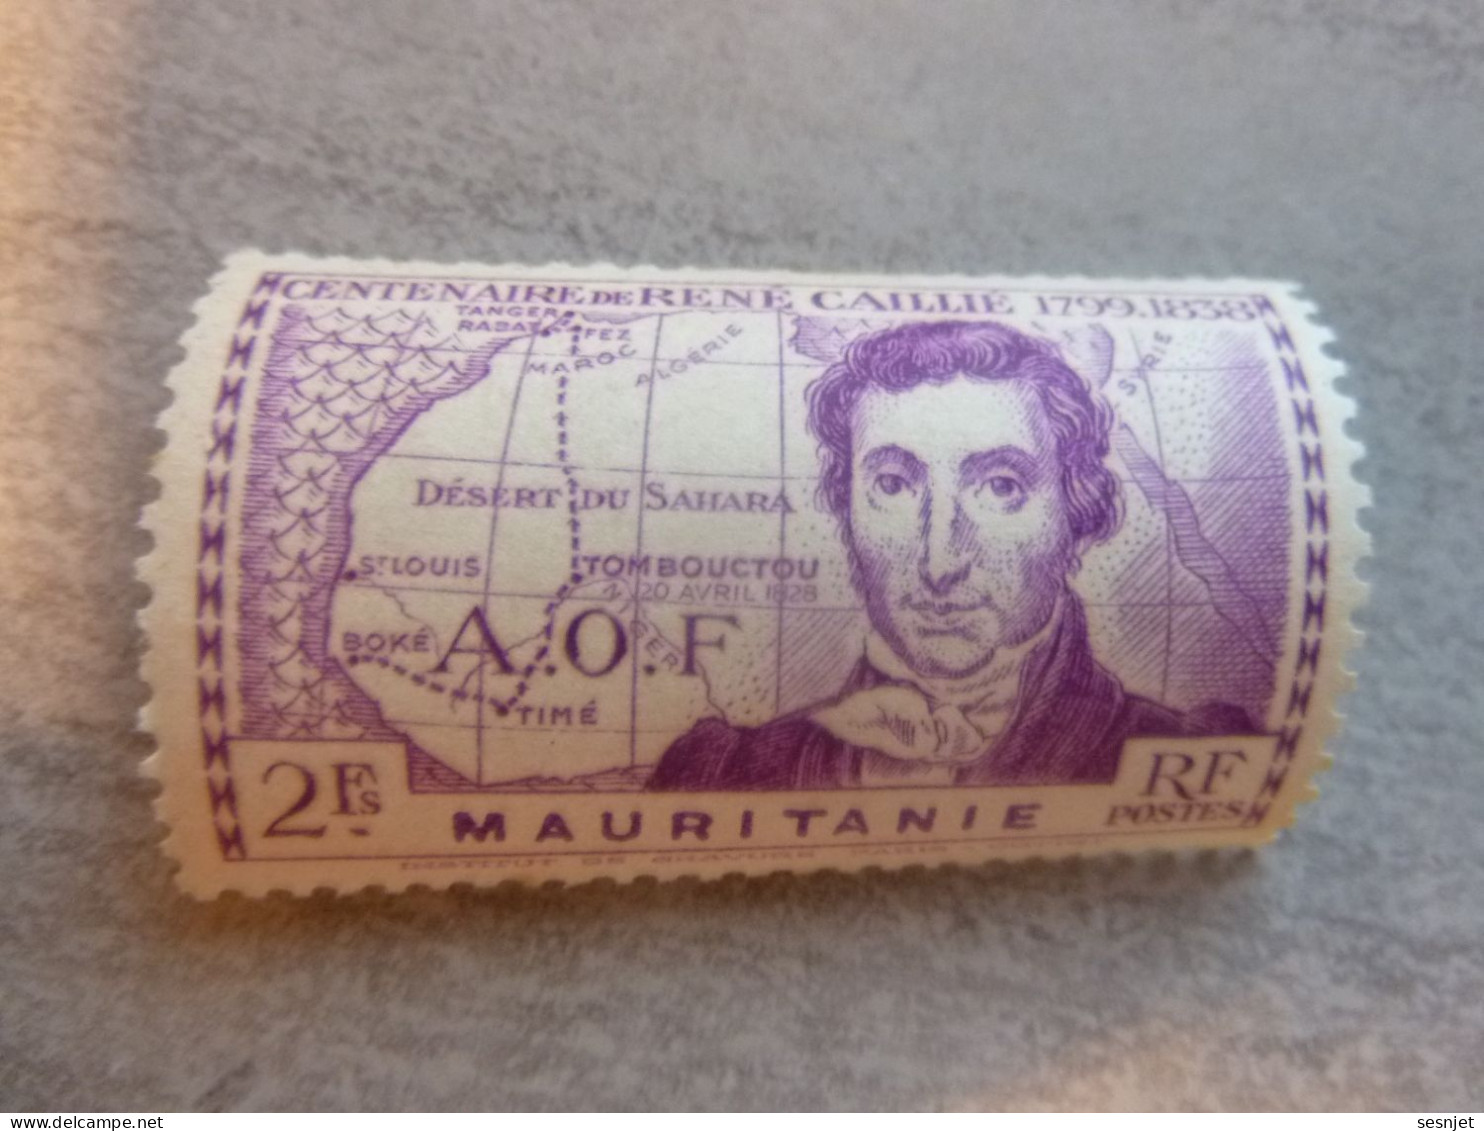 René Caillié (1709-1838) - A.o.f. - Mauritanie - 2f. - Yt 96 - Violet - Neuf - Année 1939 - - Unused Stamps